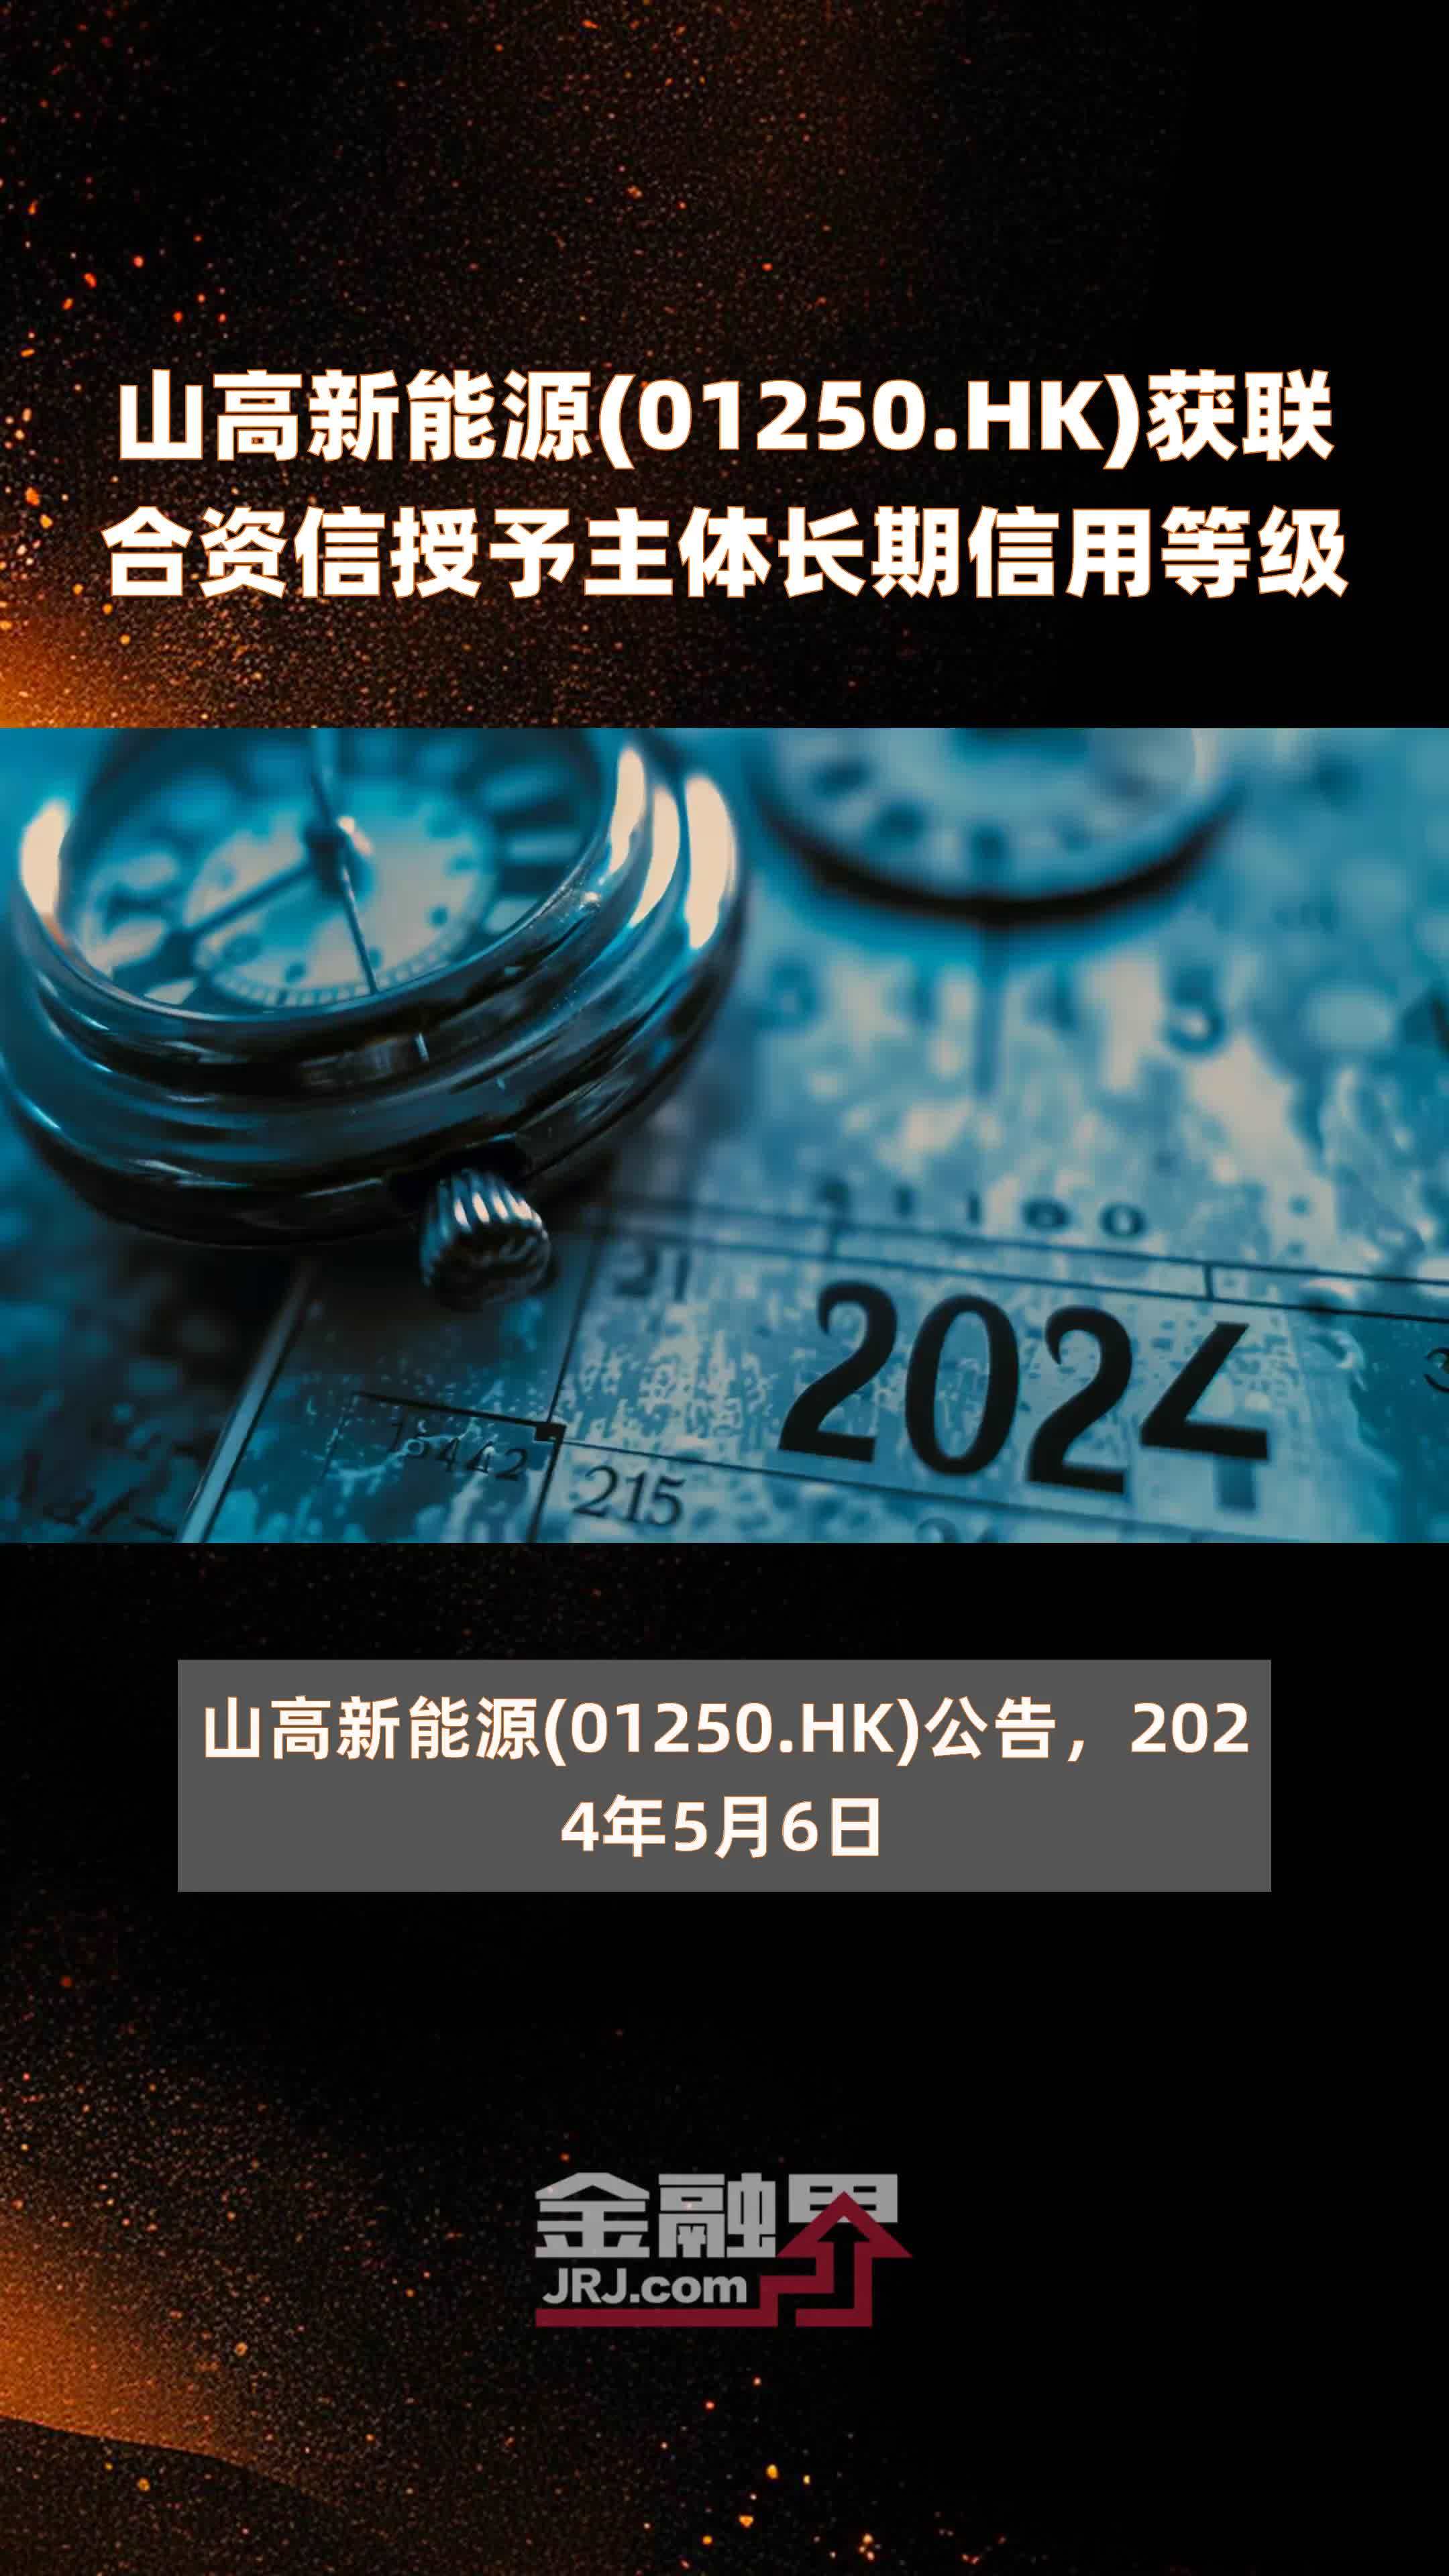 山高新能源(01250.HK)获联合资信授予主体长期信用等级 |快报